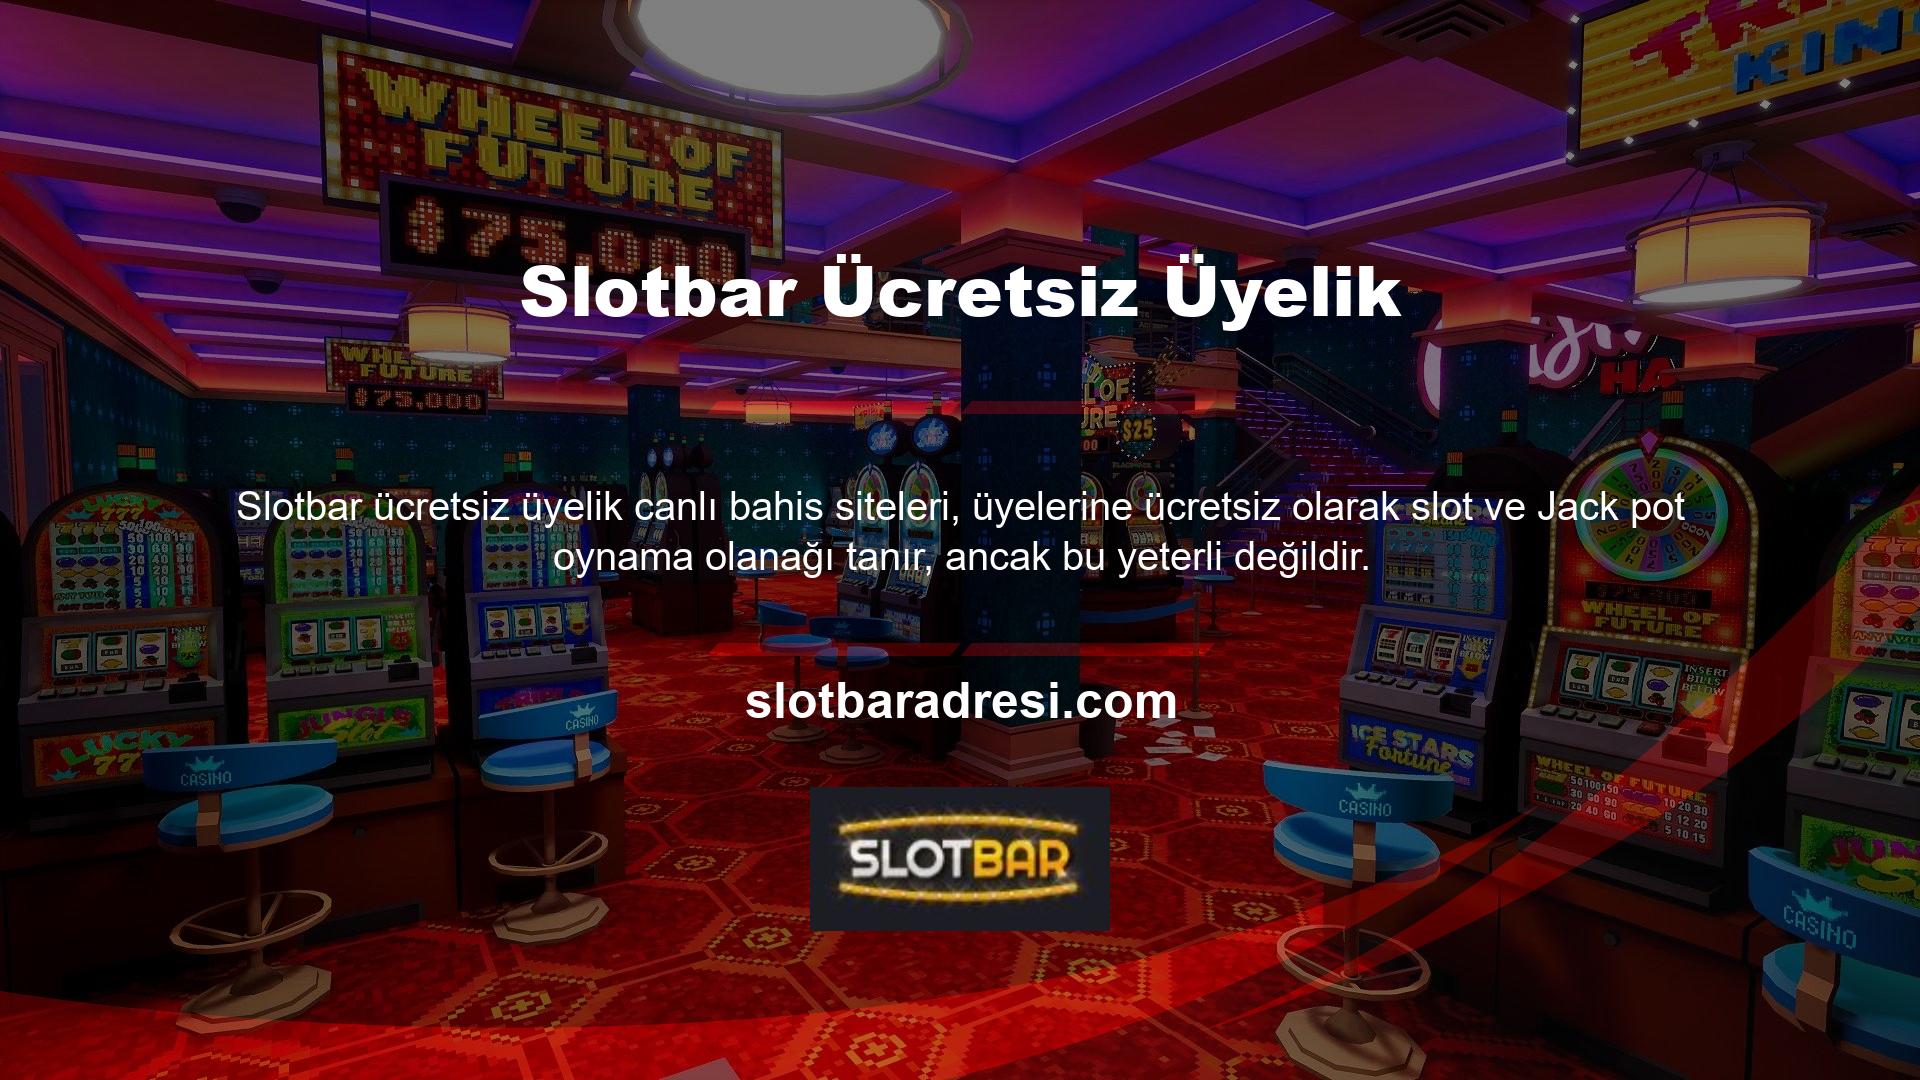 Slotbar TV uygulaması tamamen ücretsizdir